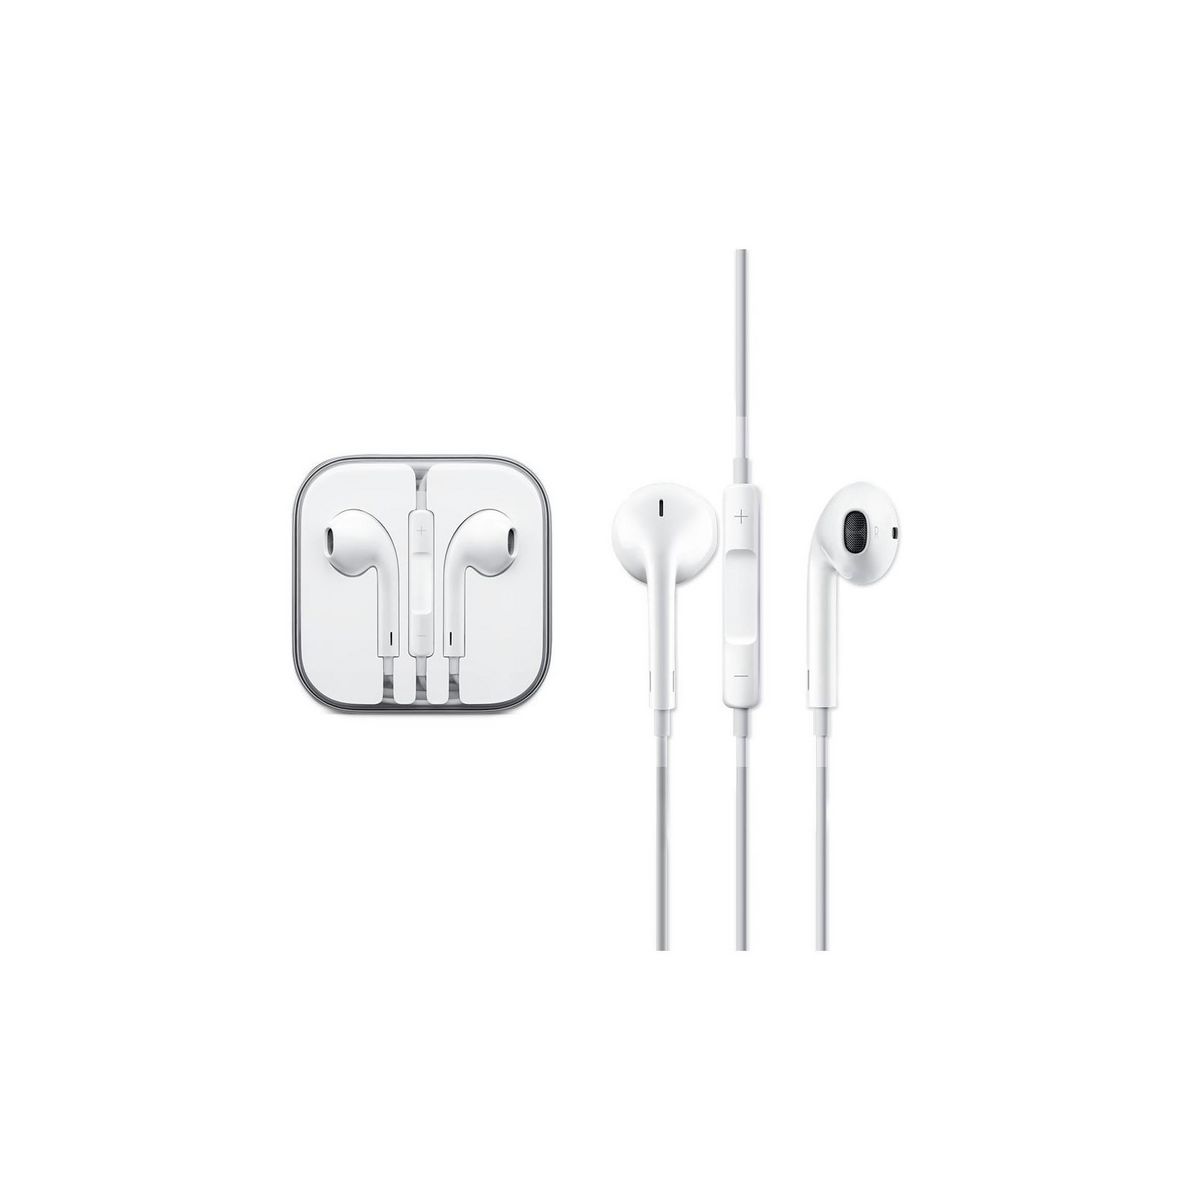  Ecouteurs pour iPHONE 6S Apple EarPods Origine